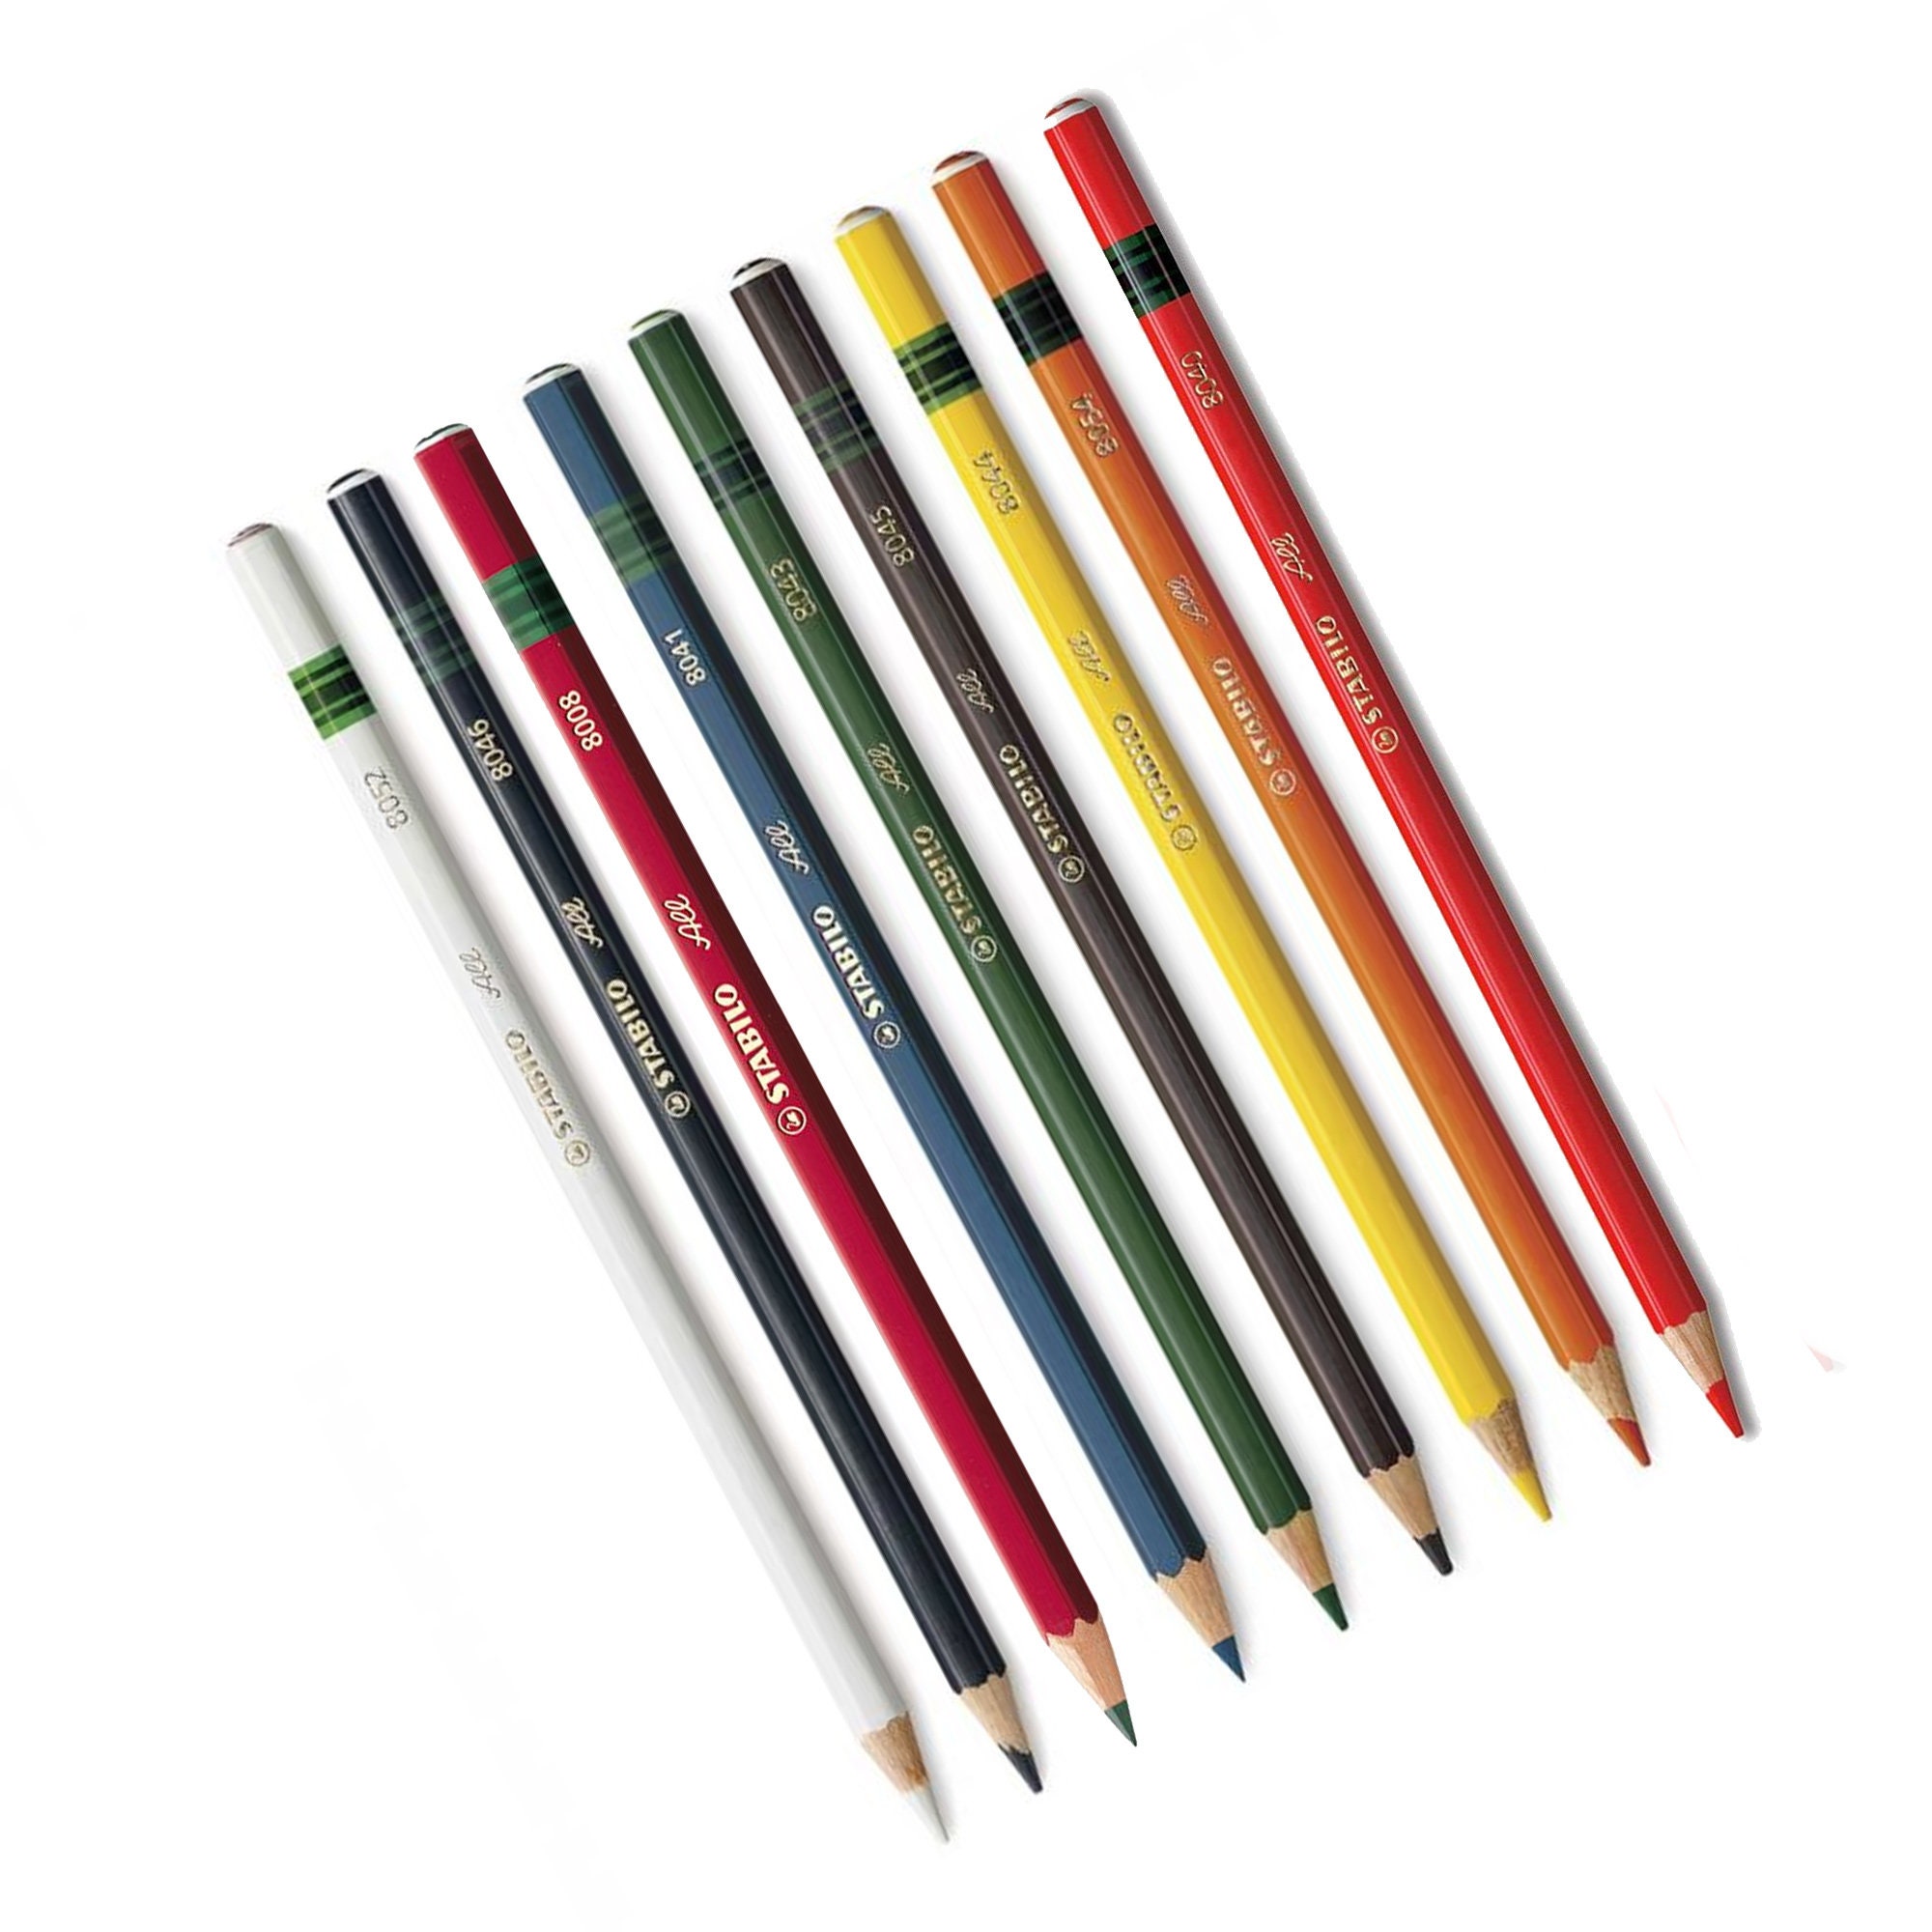 Stabilo All Pencil 8008 Graphite 12 Pack